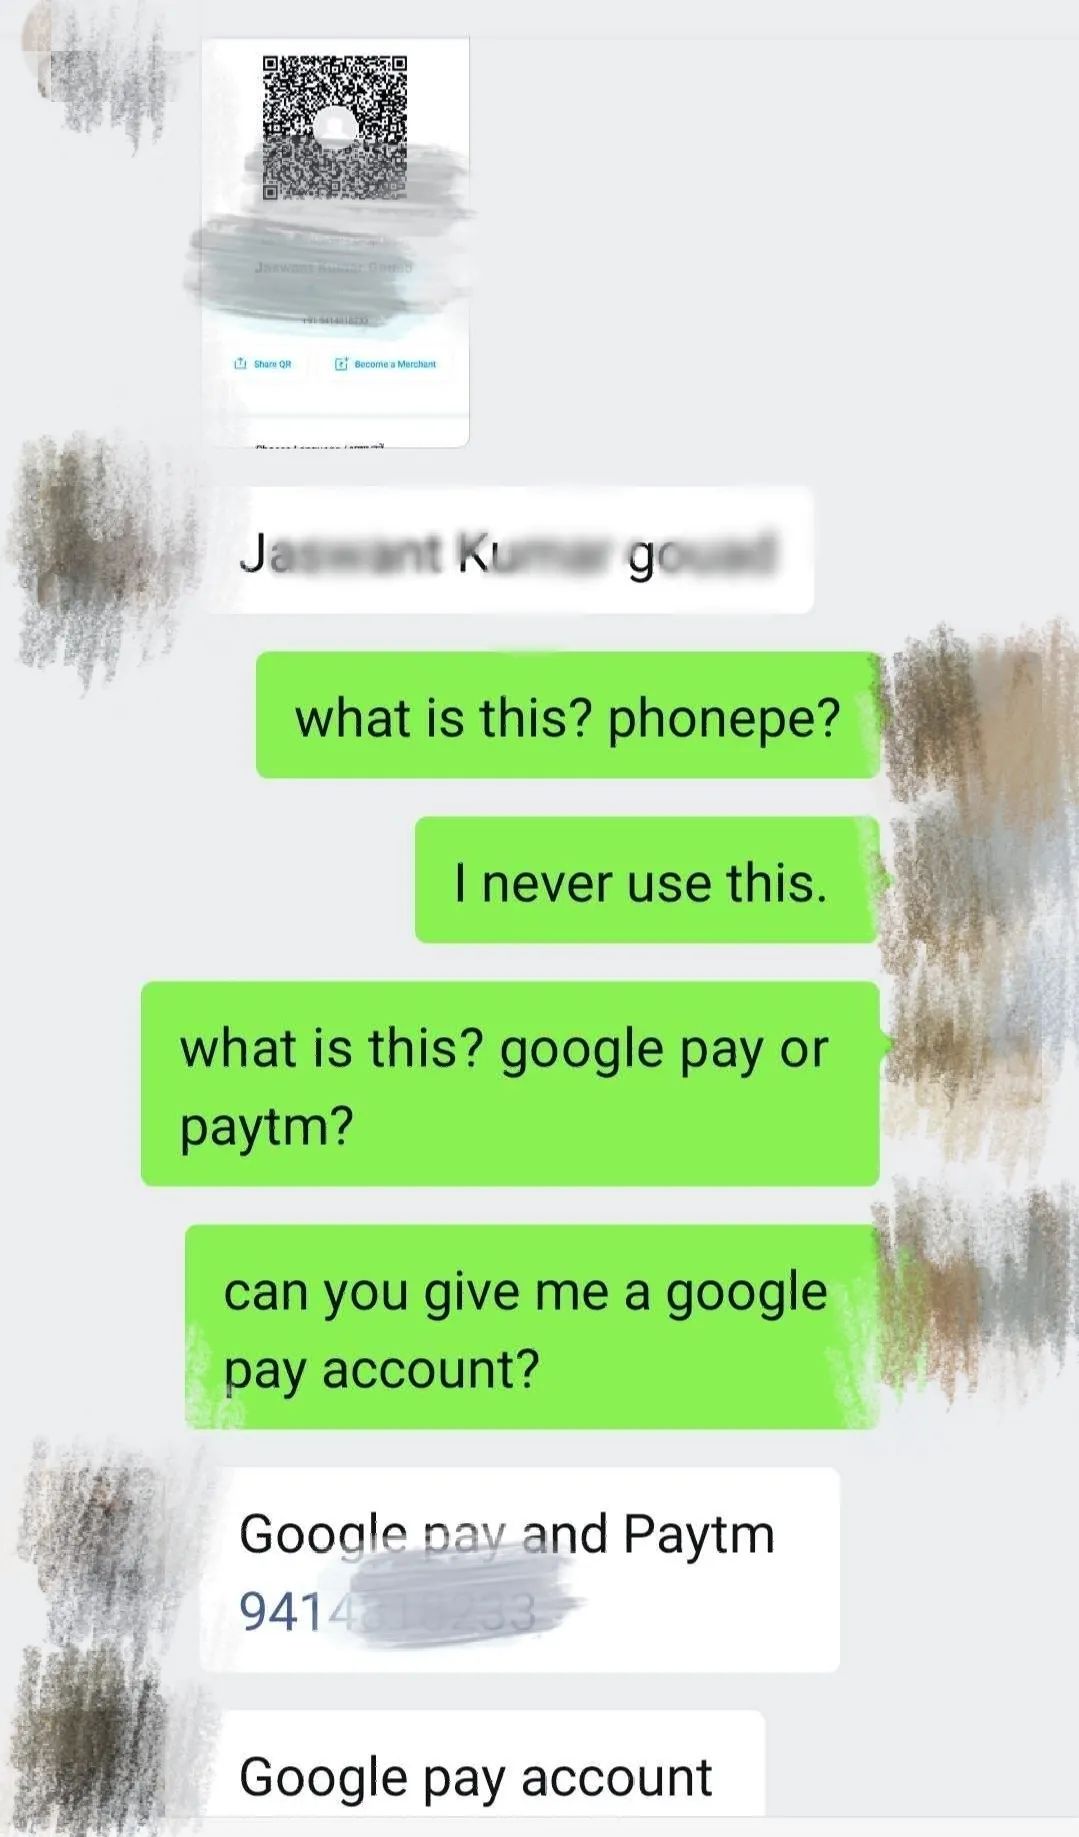 男子印度朋友在微信上问其借钱 却因微信被封失联了